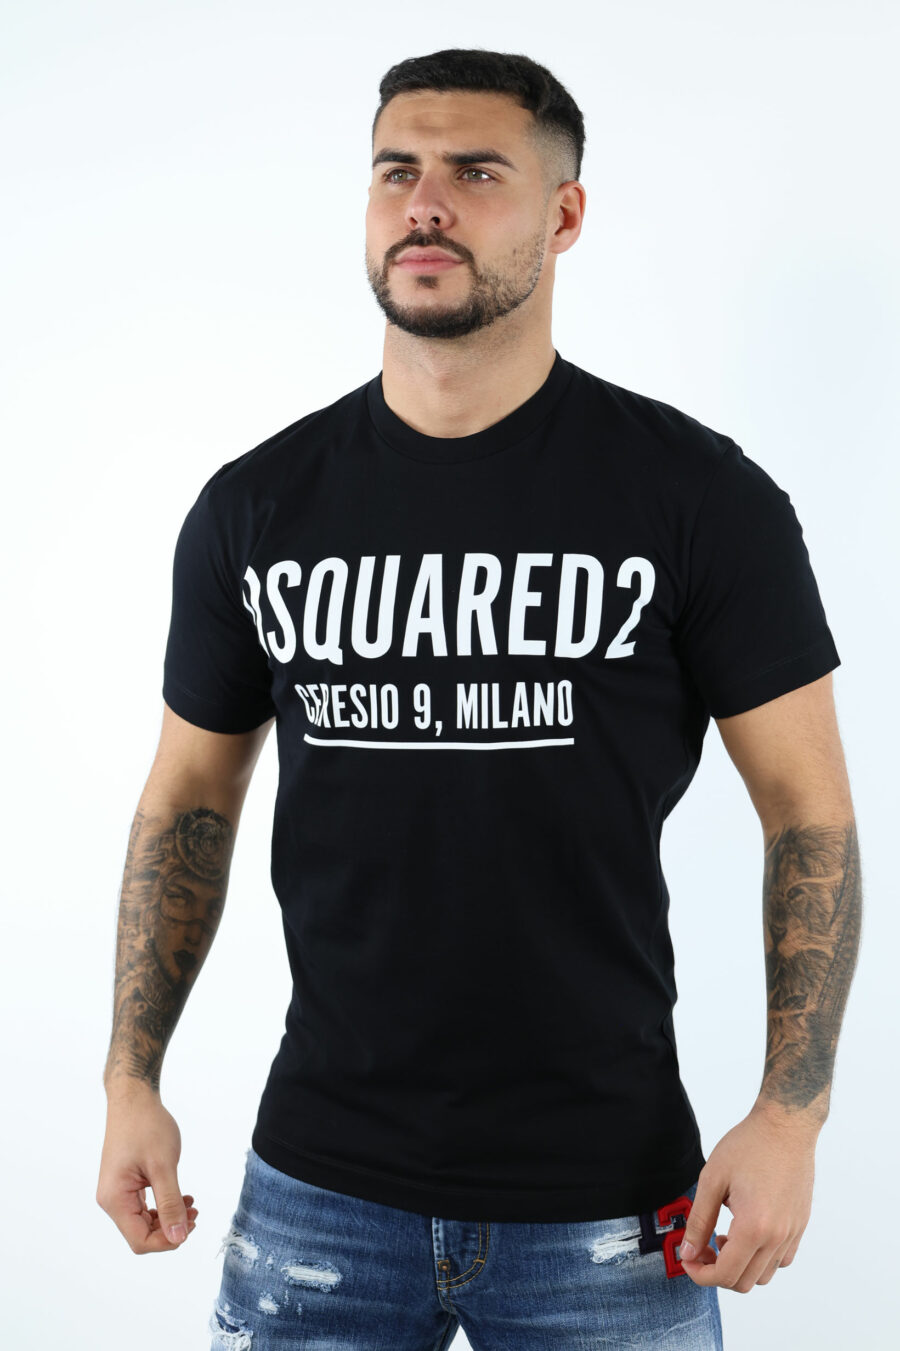 Schwarzes T-shirt mit Maxilogo "ceresio 9 milano" - 106862